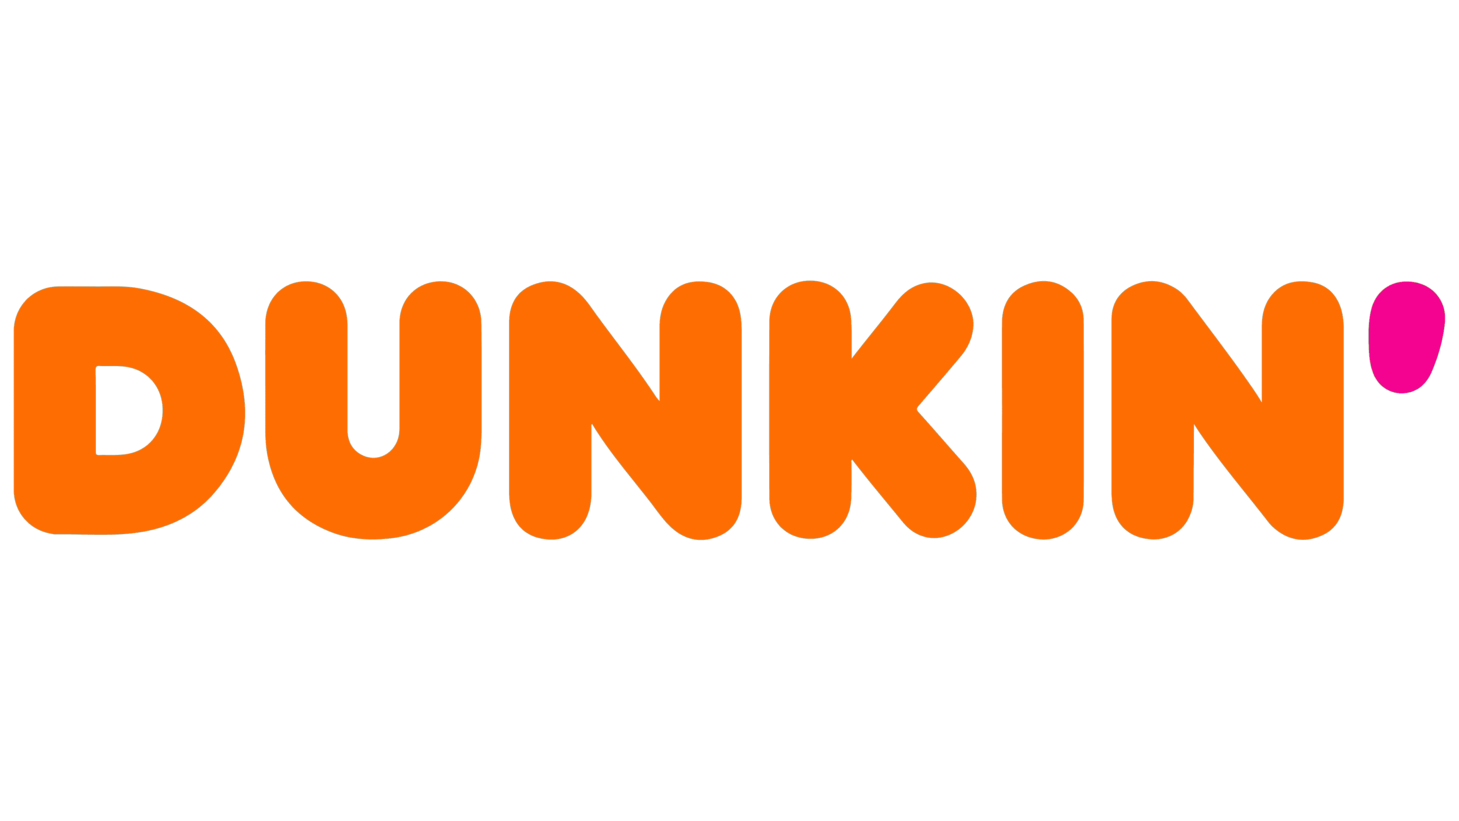 Dunkin sign